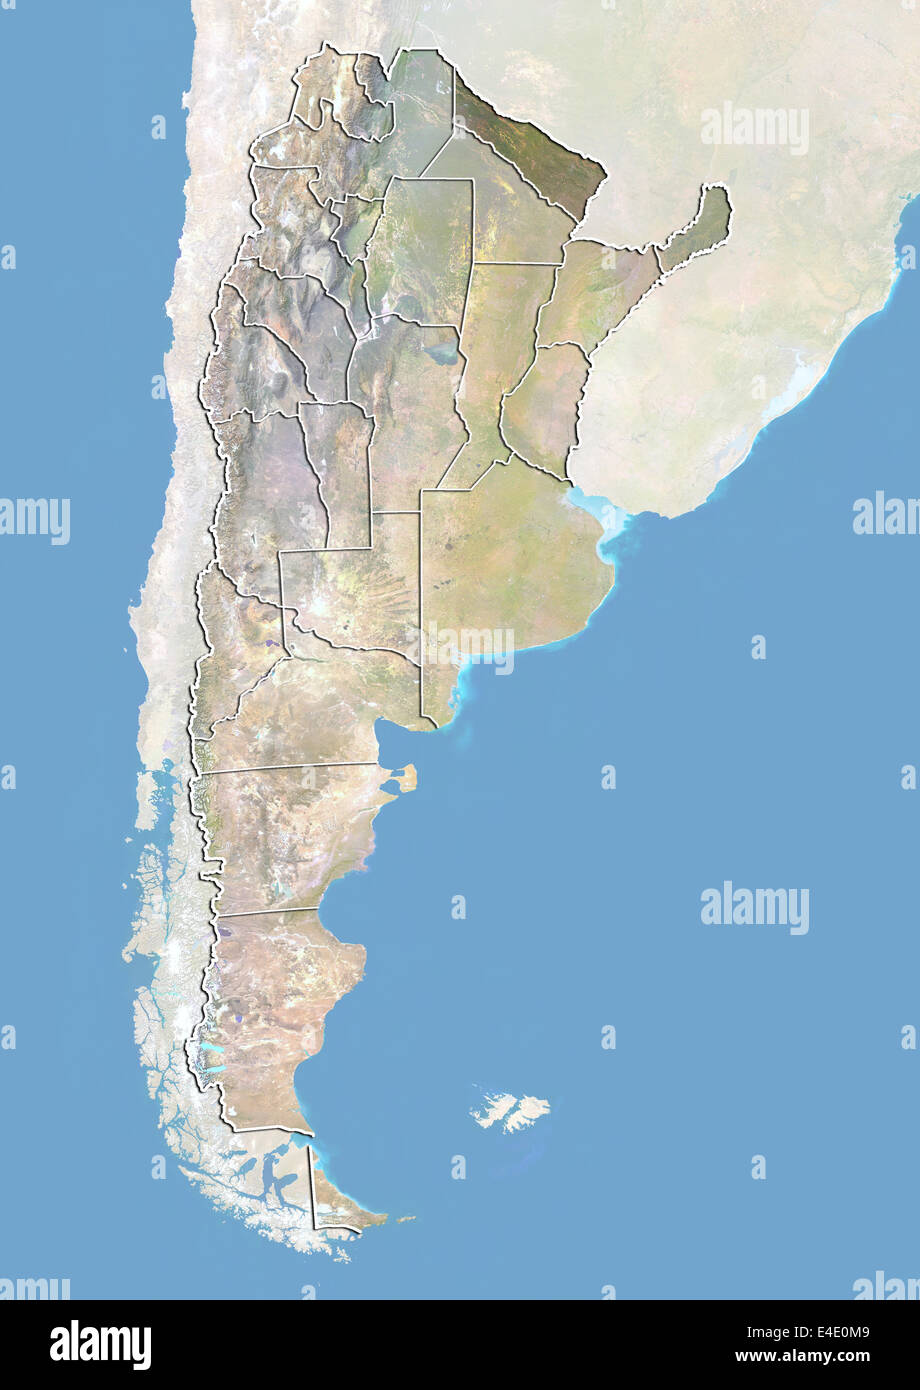 L'Argentine et la province de Formosa, image satellite avec effet de choc Banque D'Images